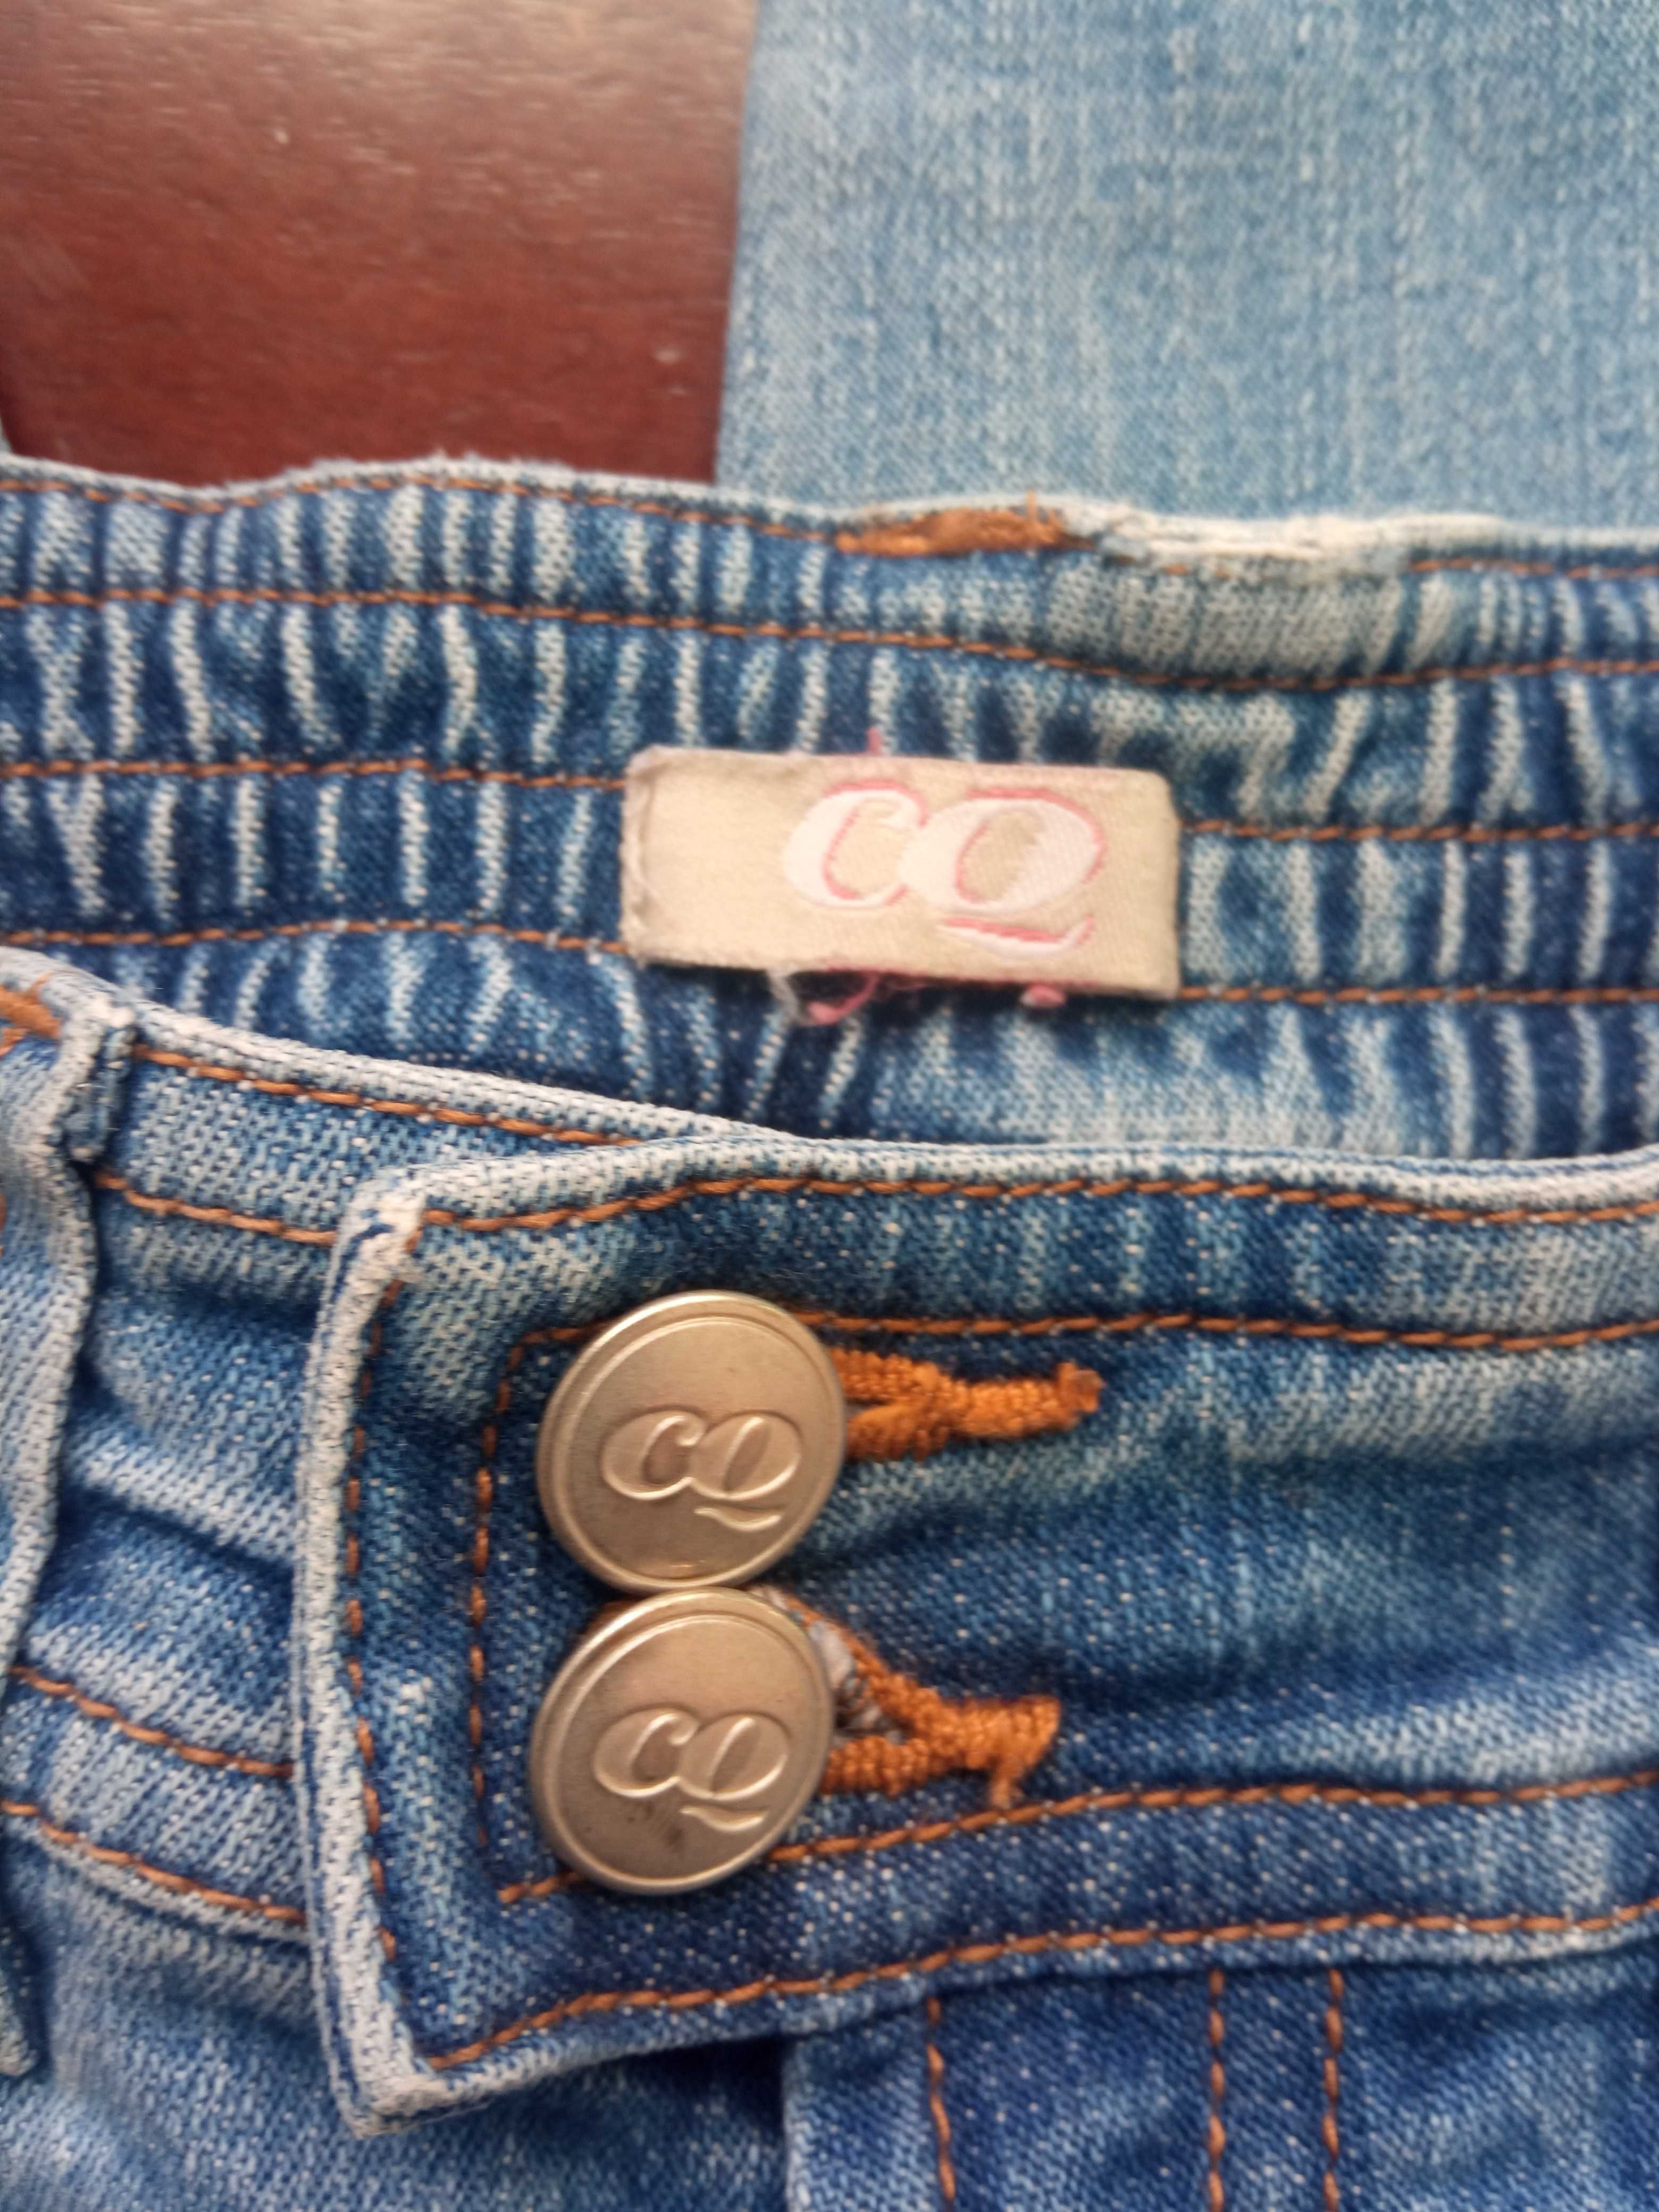 Spodnie  jeans dla dziewczynki R. 110, firma  CQ